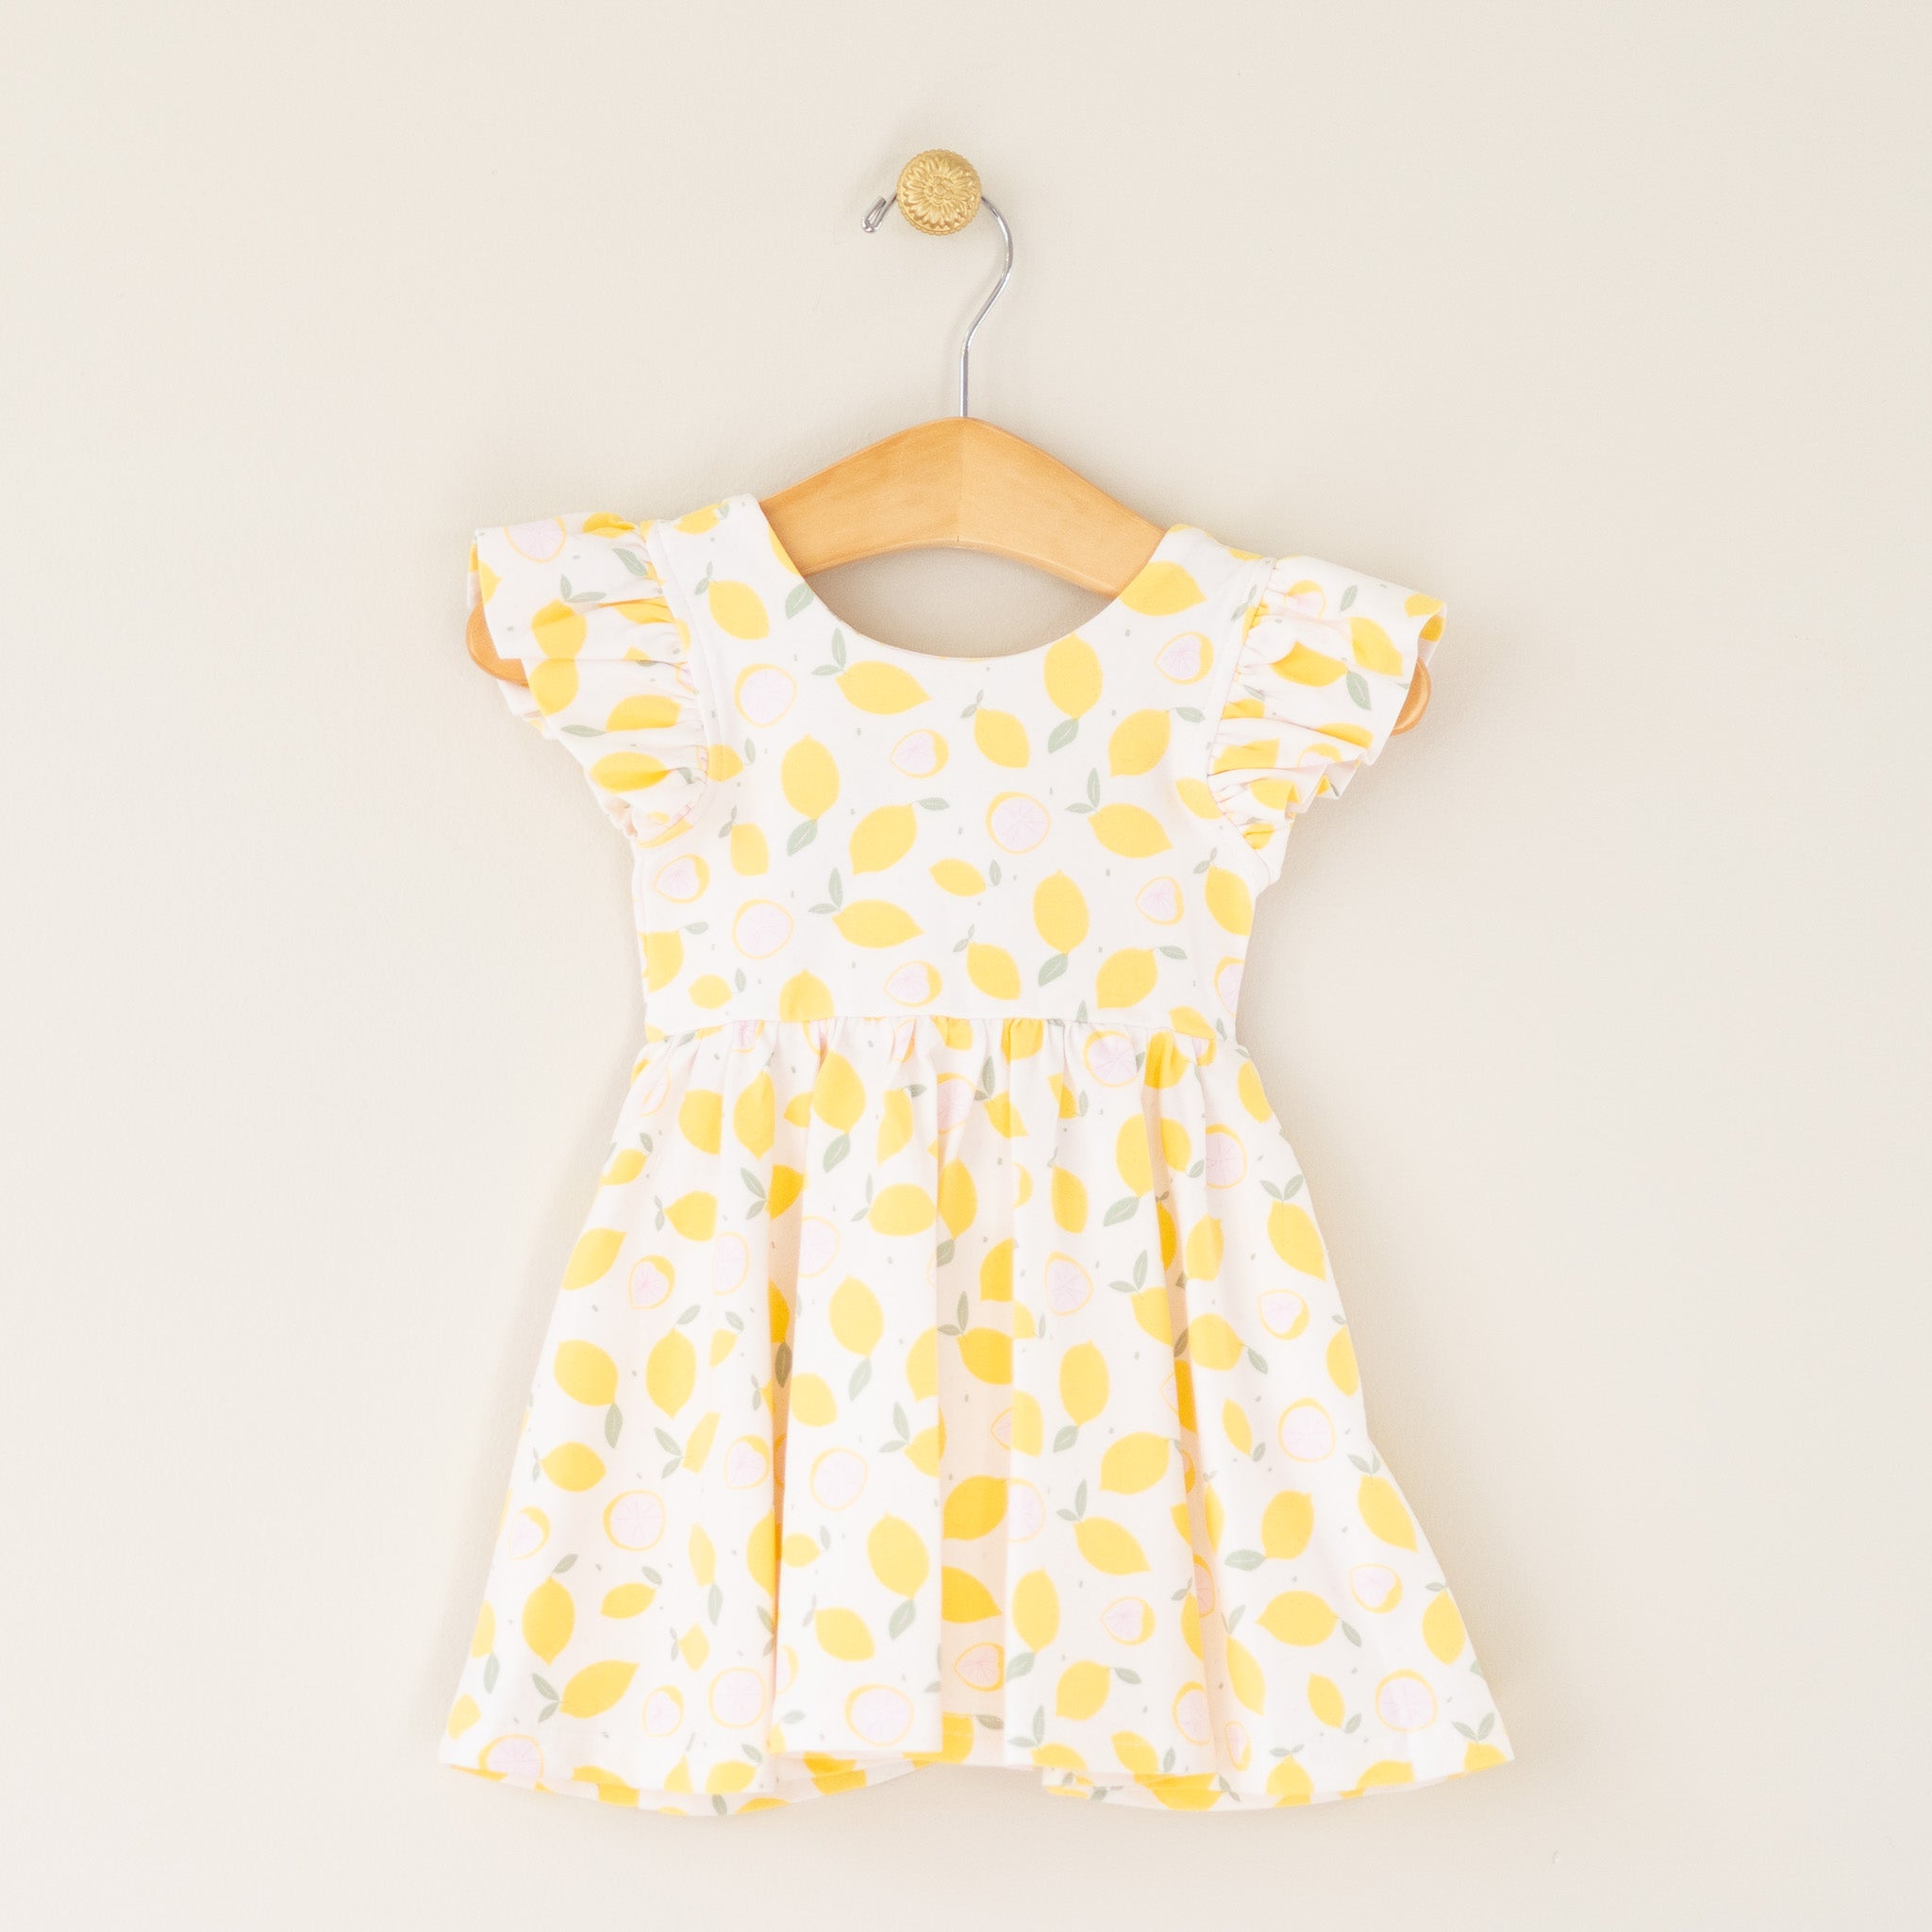 Lemon Drop Knit Infant Dress